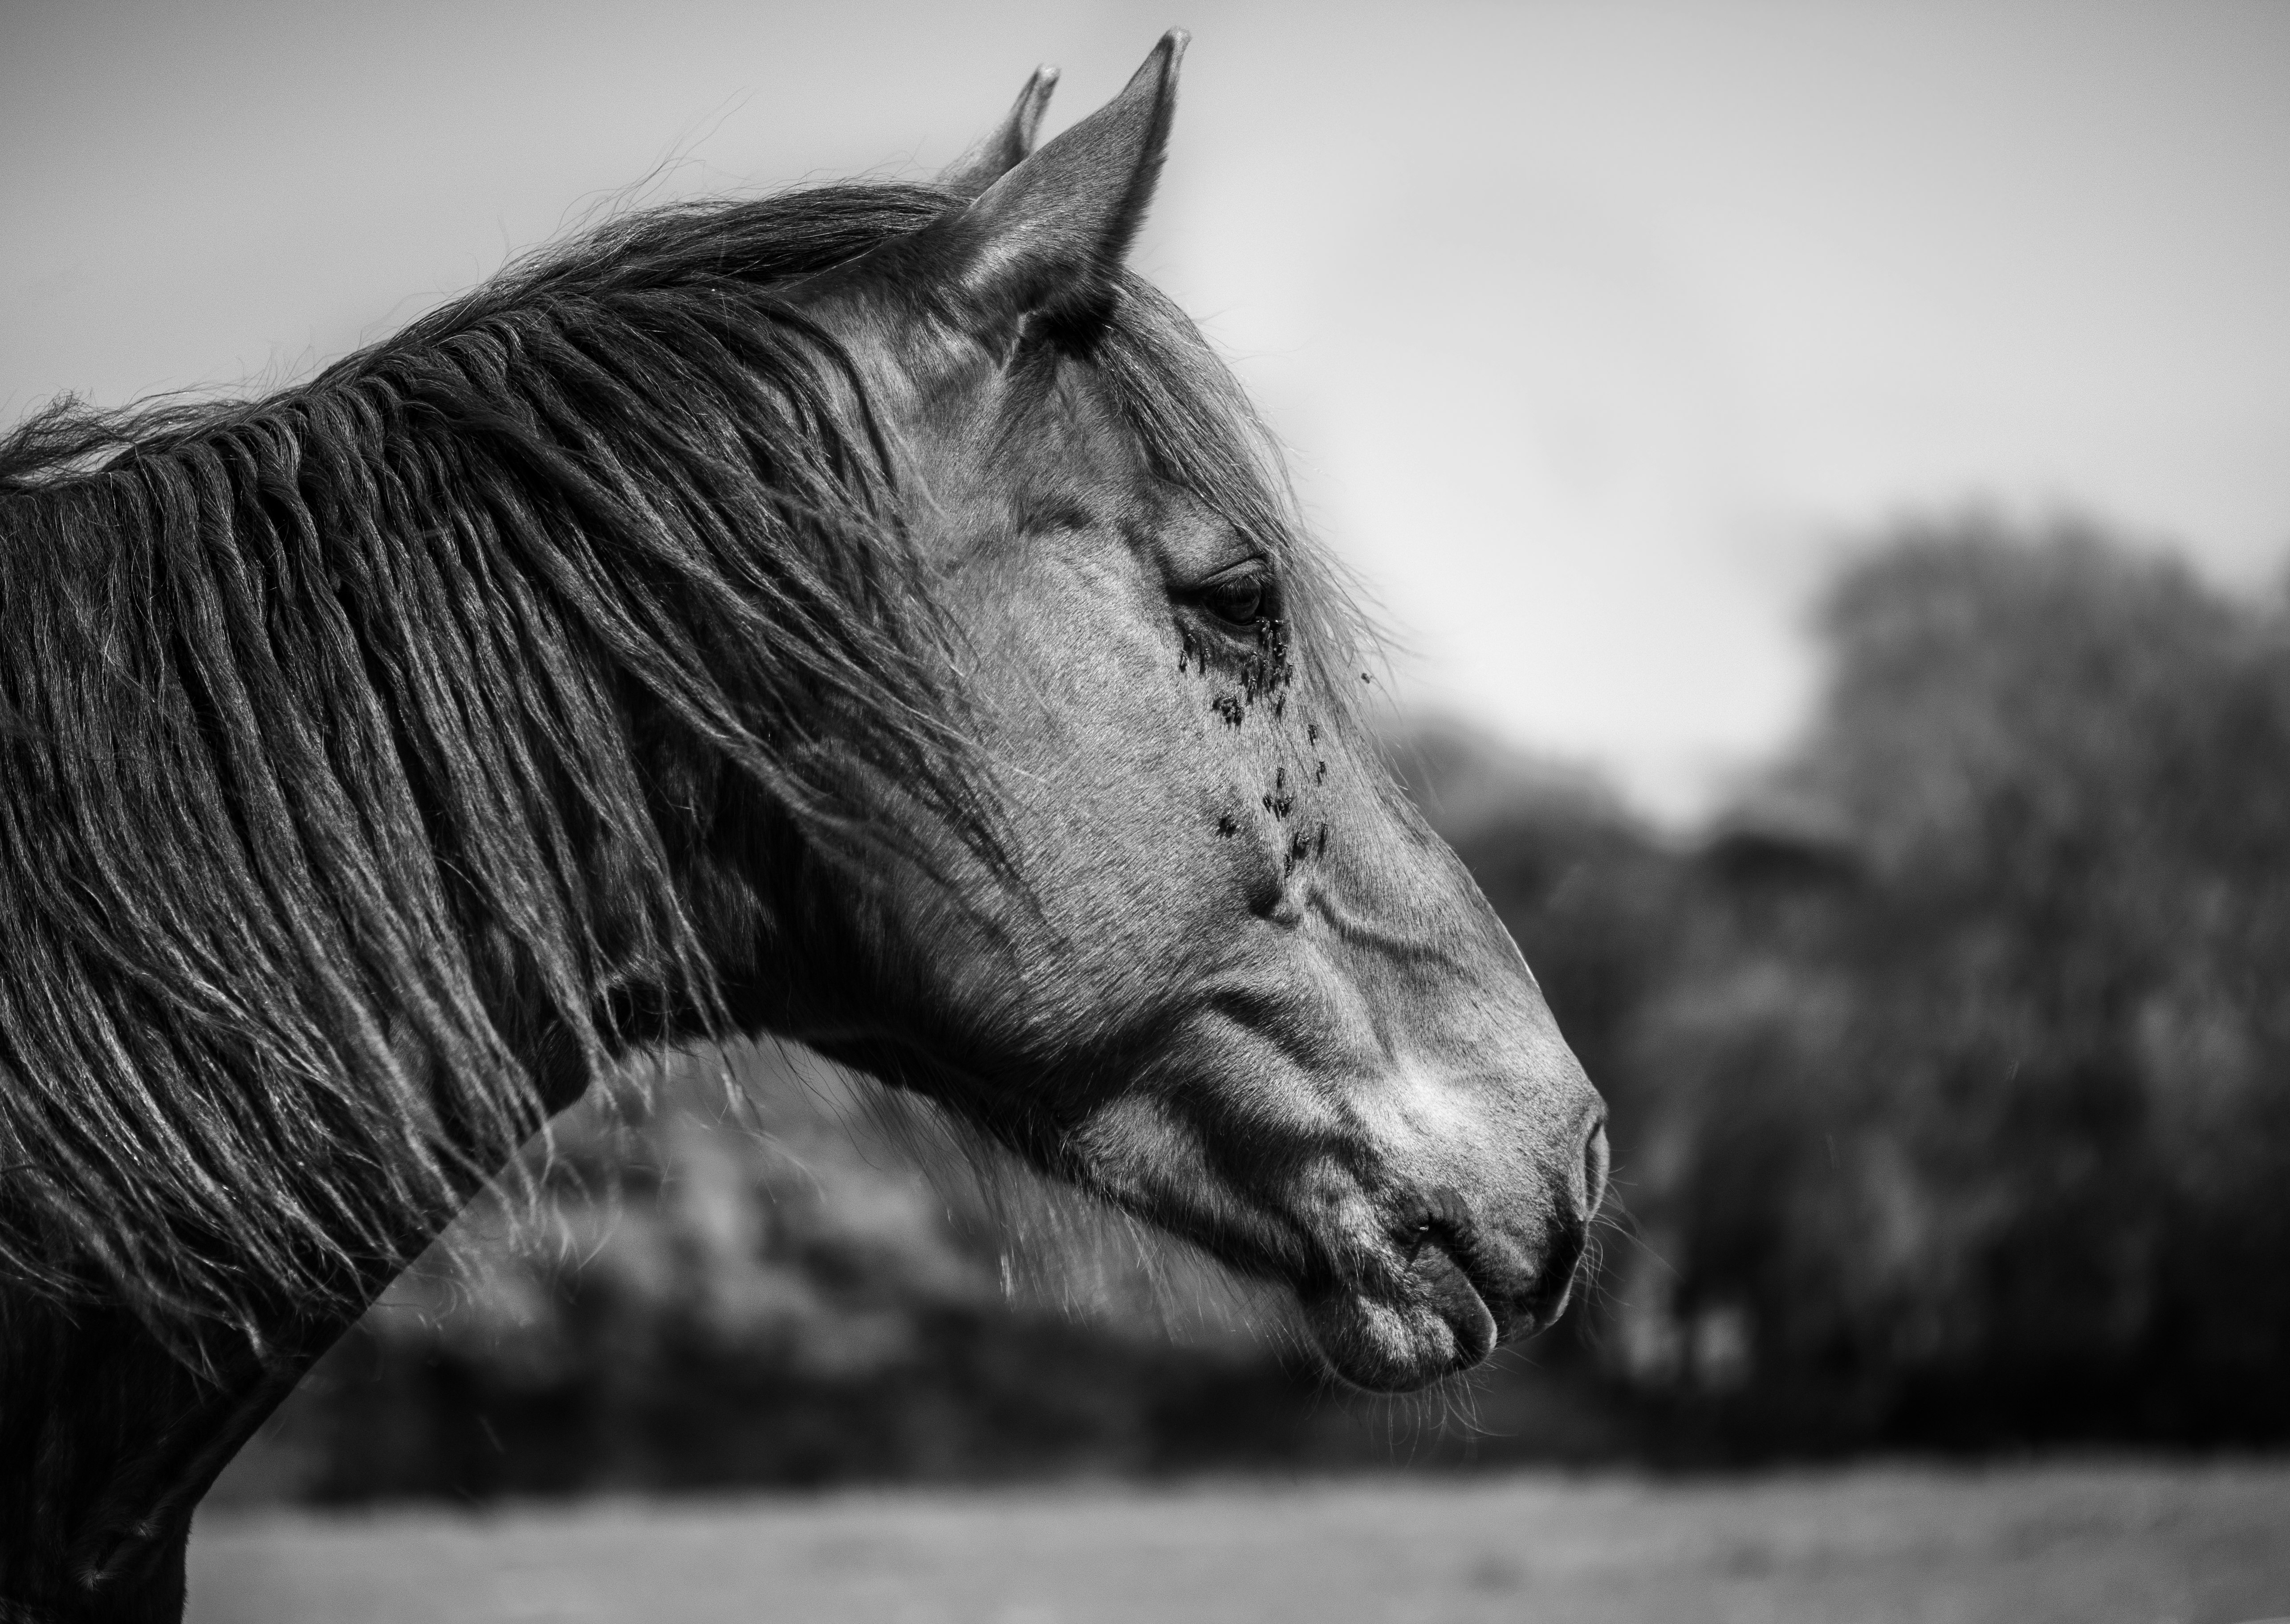 greyscale photo of horse